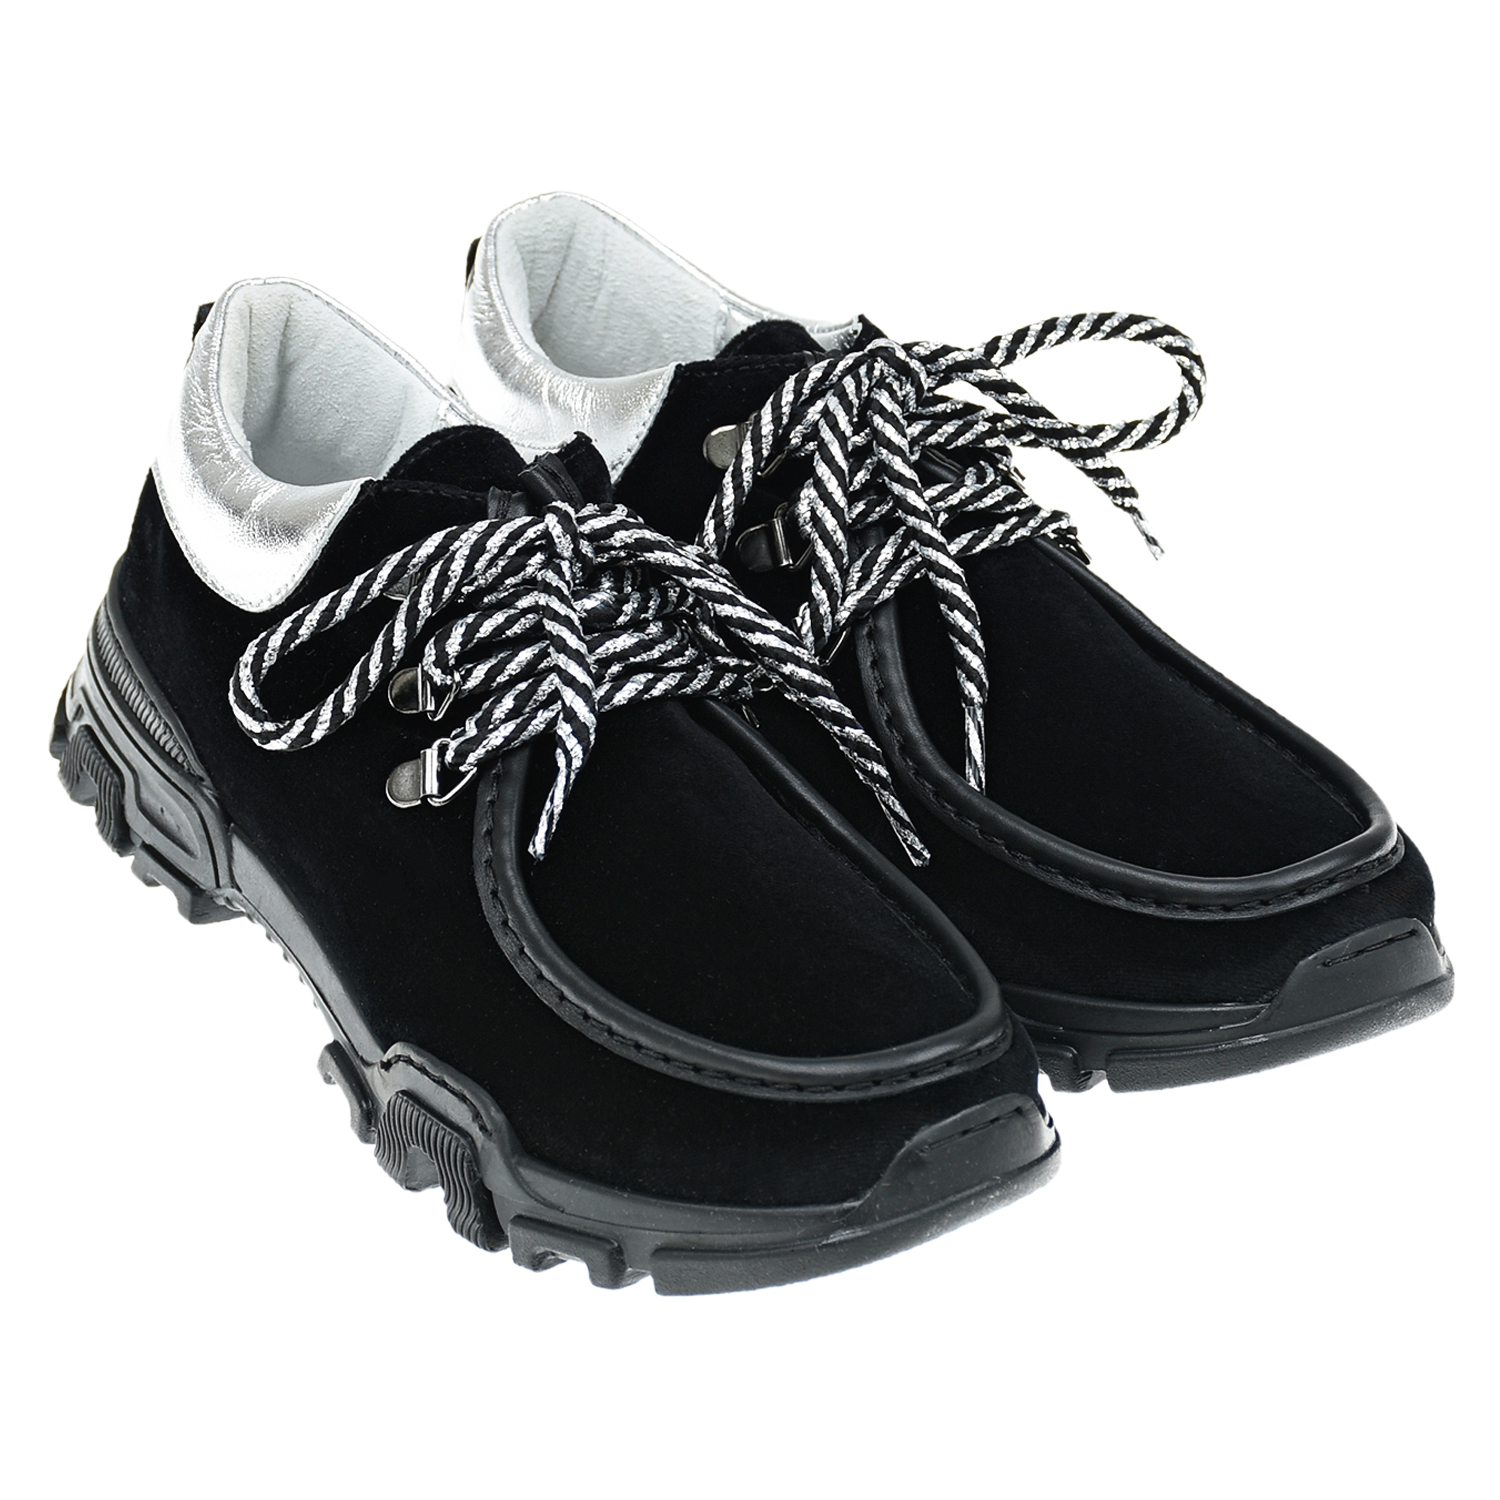 Низкие ботинки для девочек Monnalisa детские, размер 37, цвет черный - фото 1